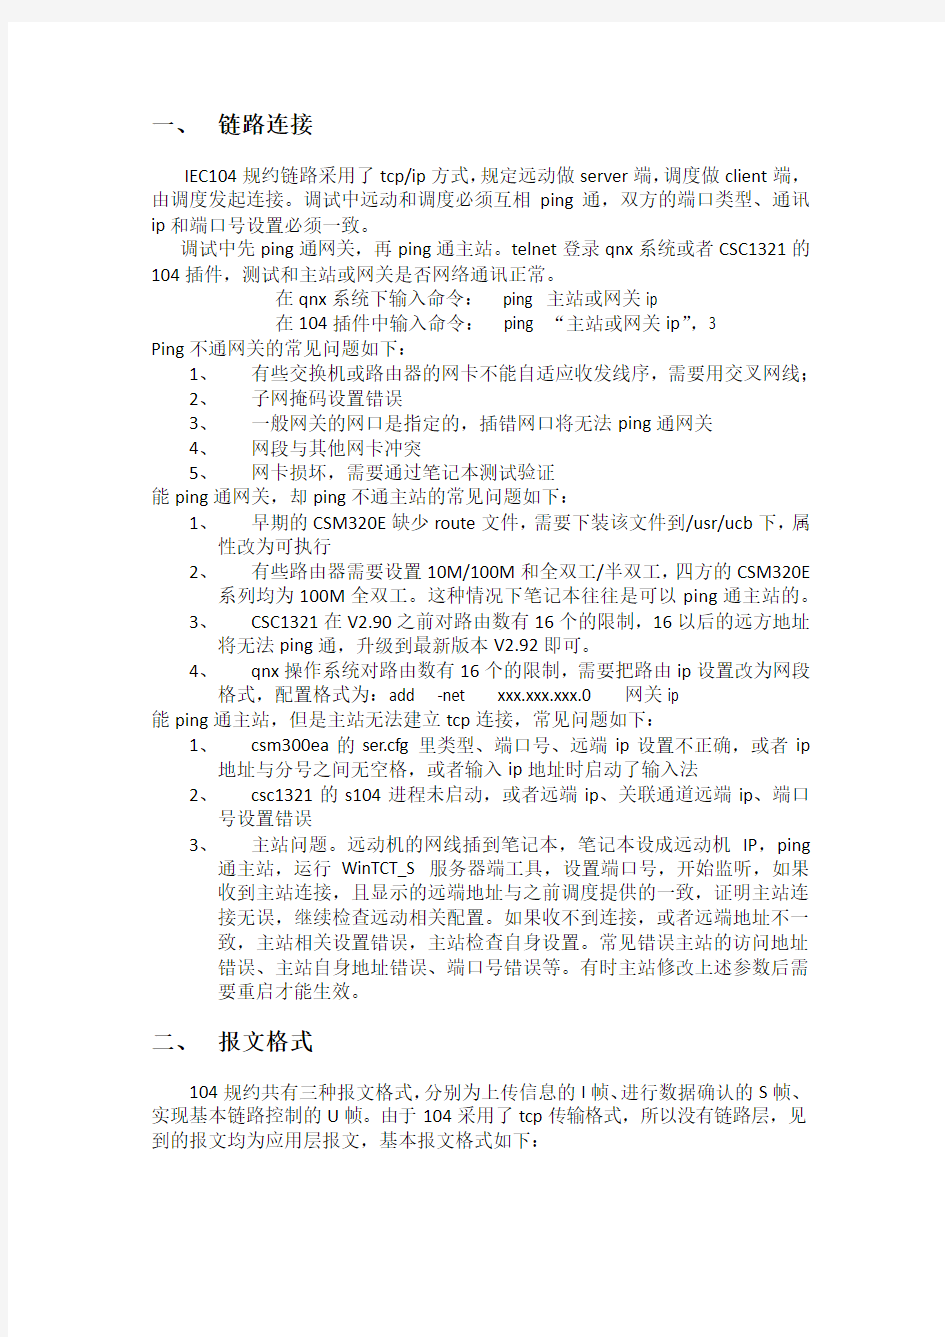 北京四方2014年度工程技术培训104规约解析及应用常见问题